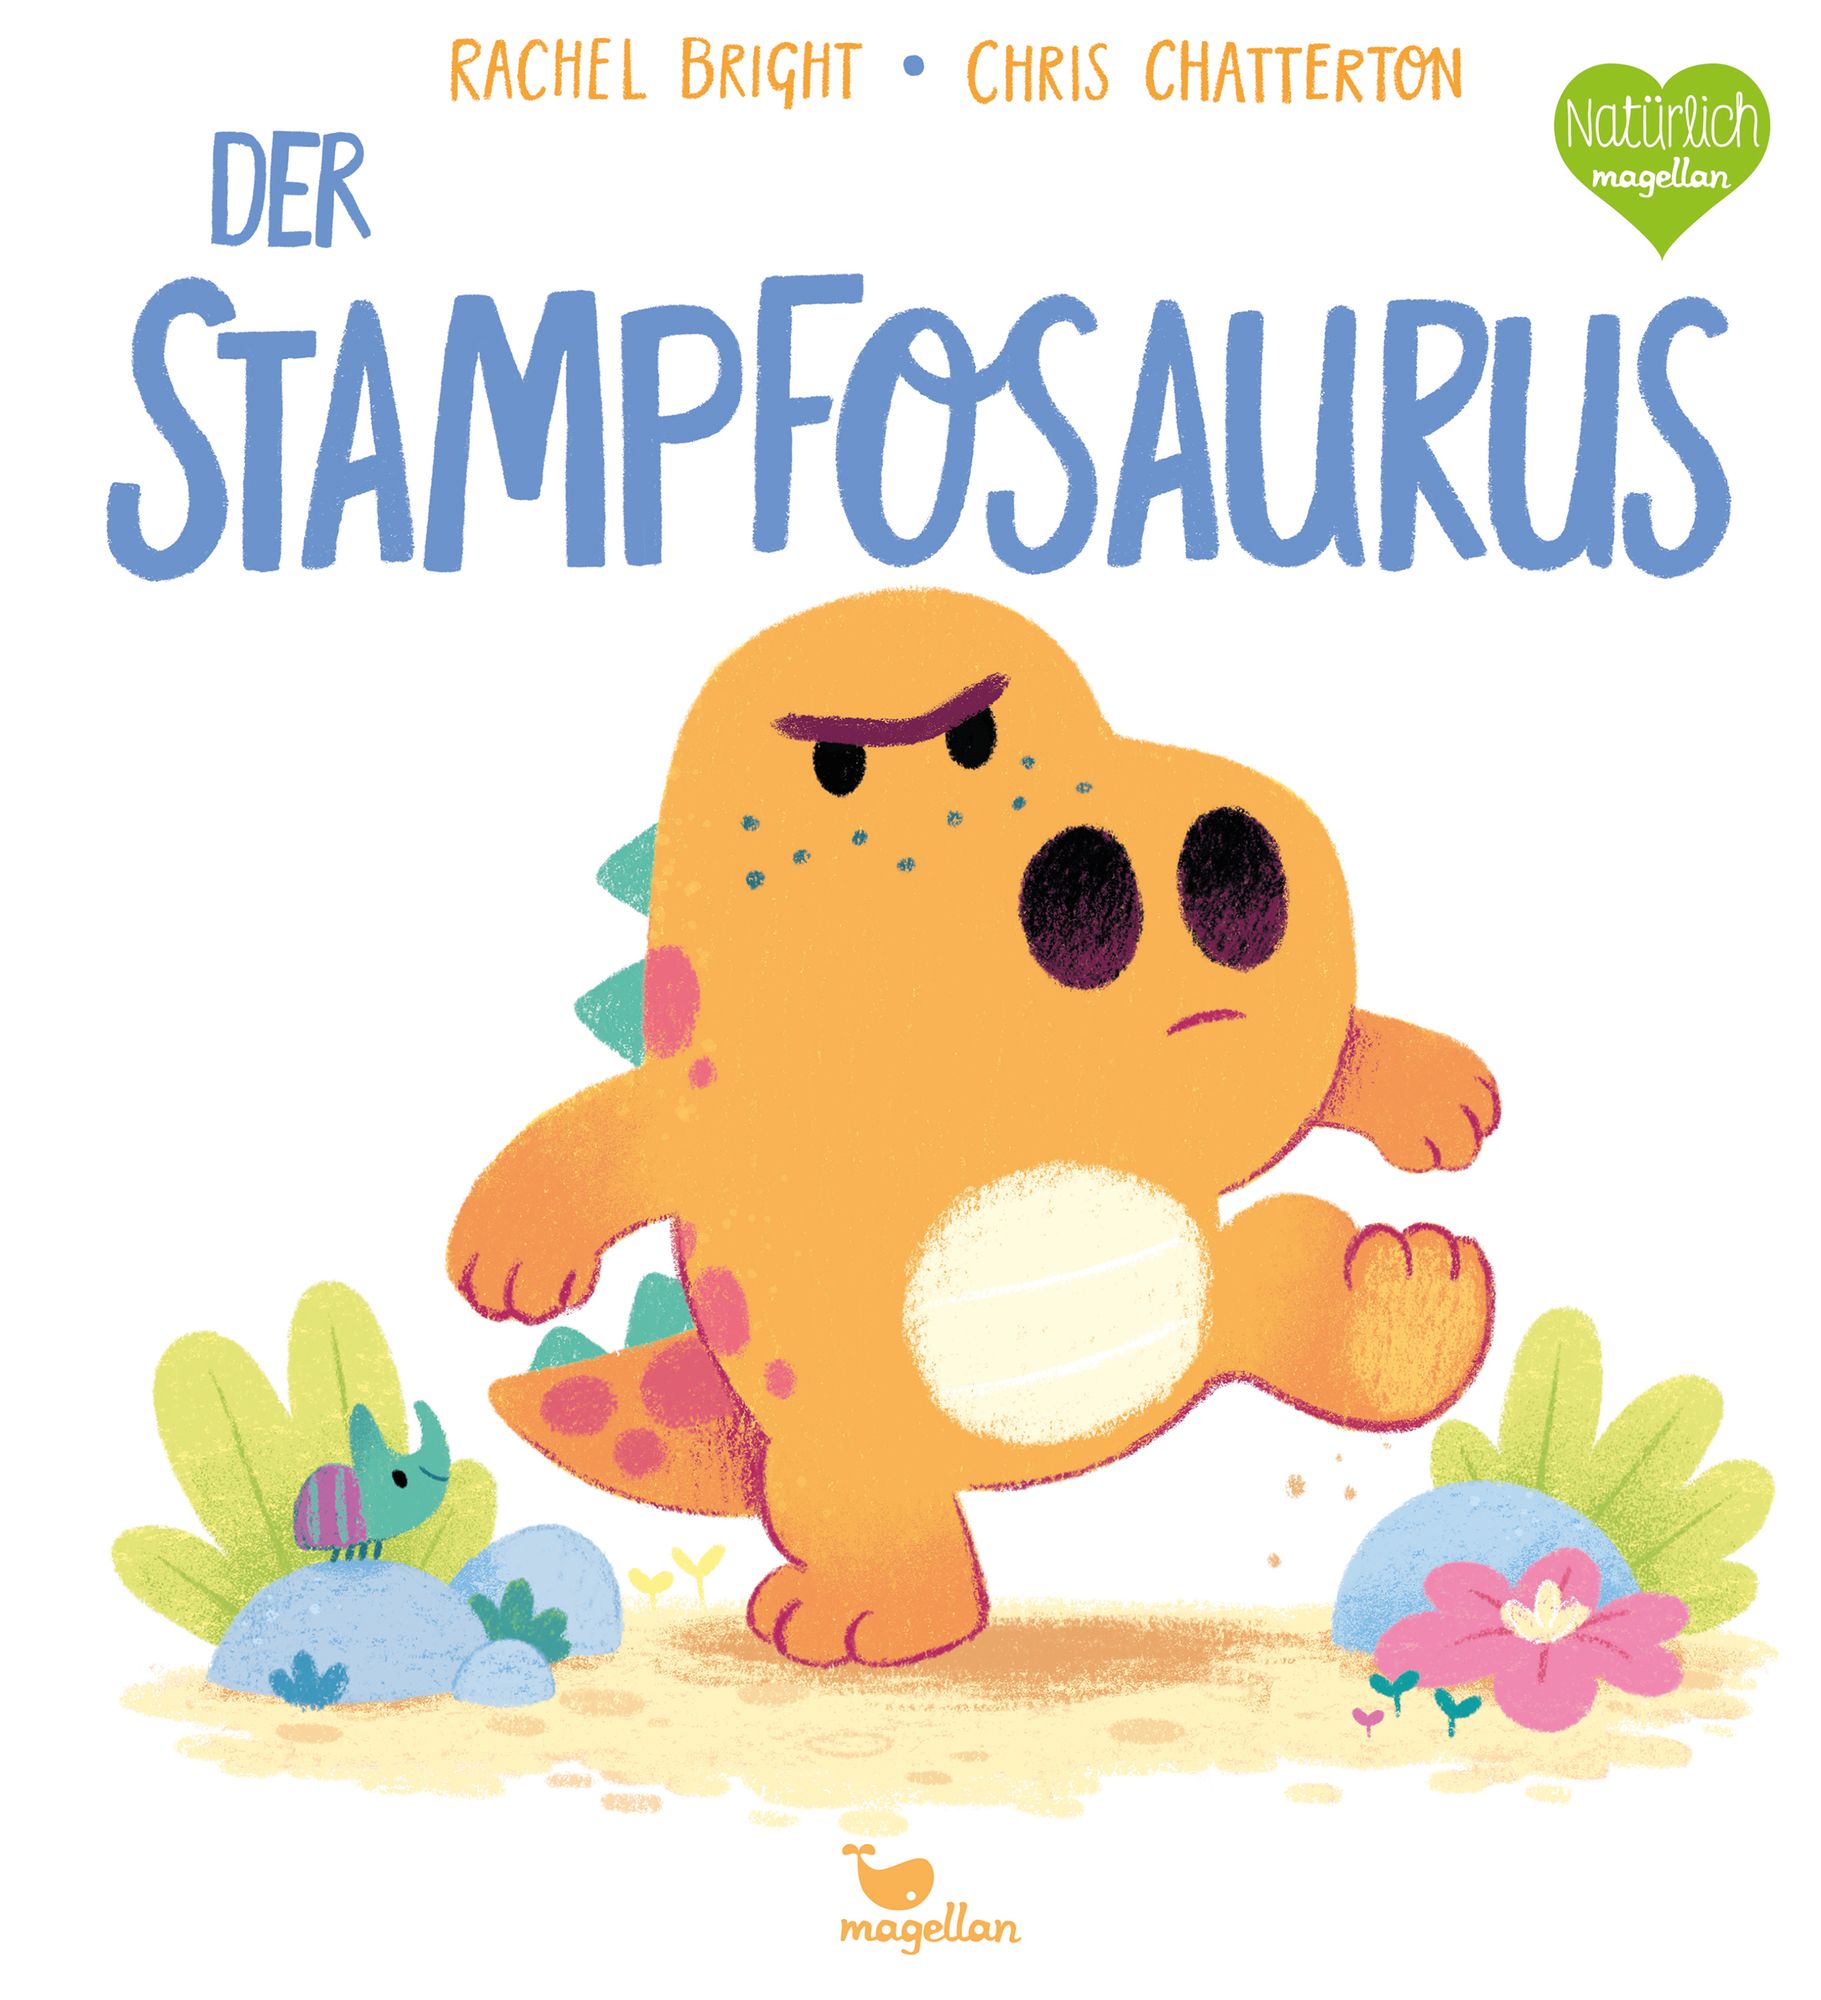 Der Stampfosaurus von Rachel Bright. Bücher | Orell Füssli